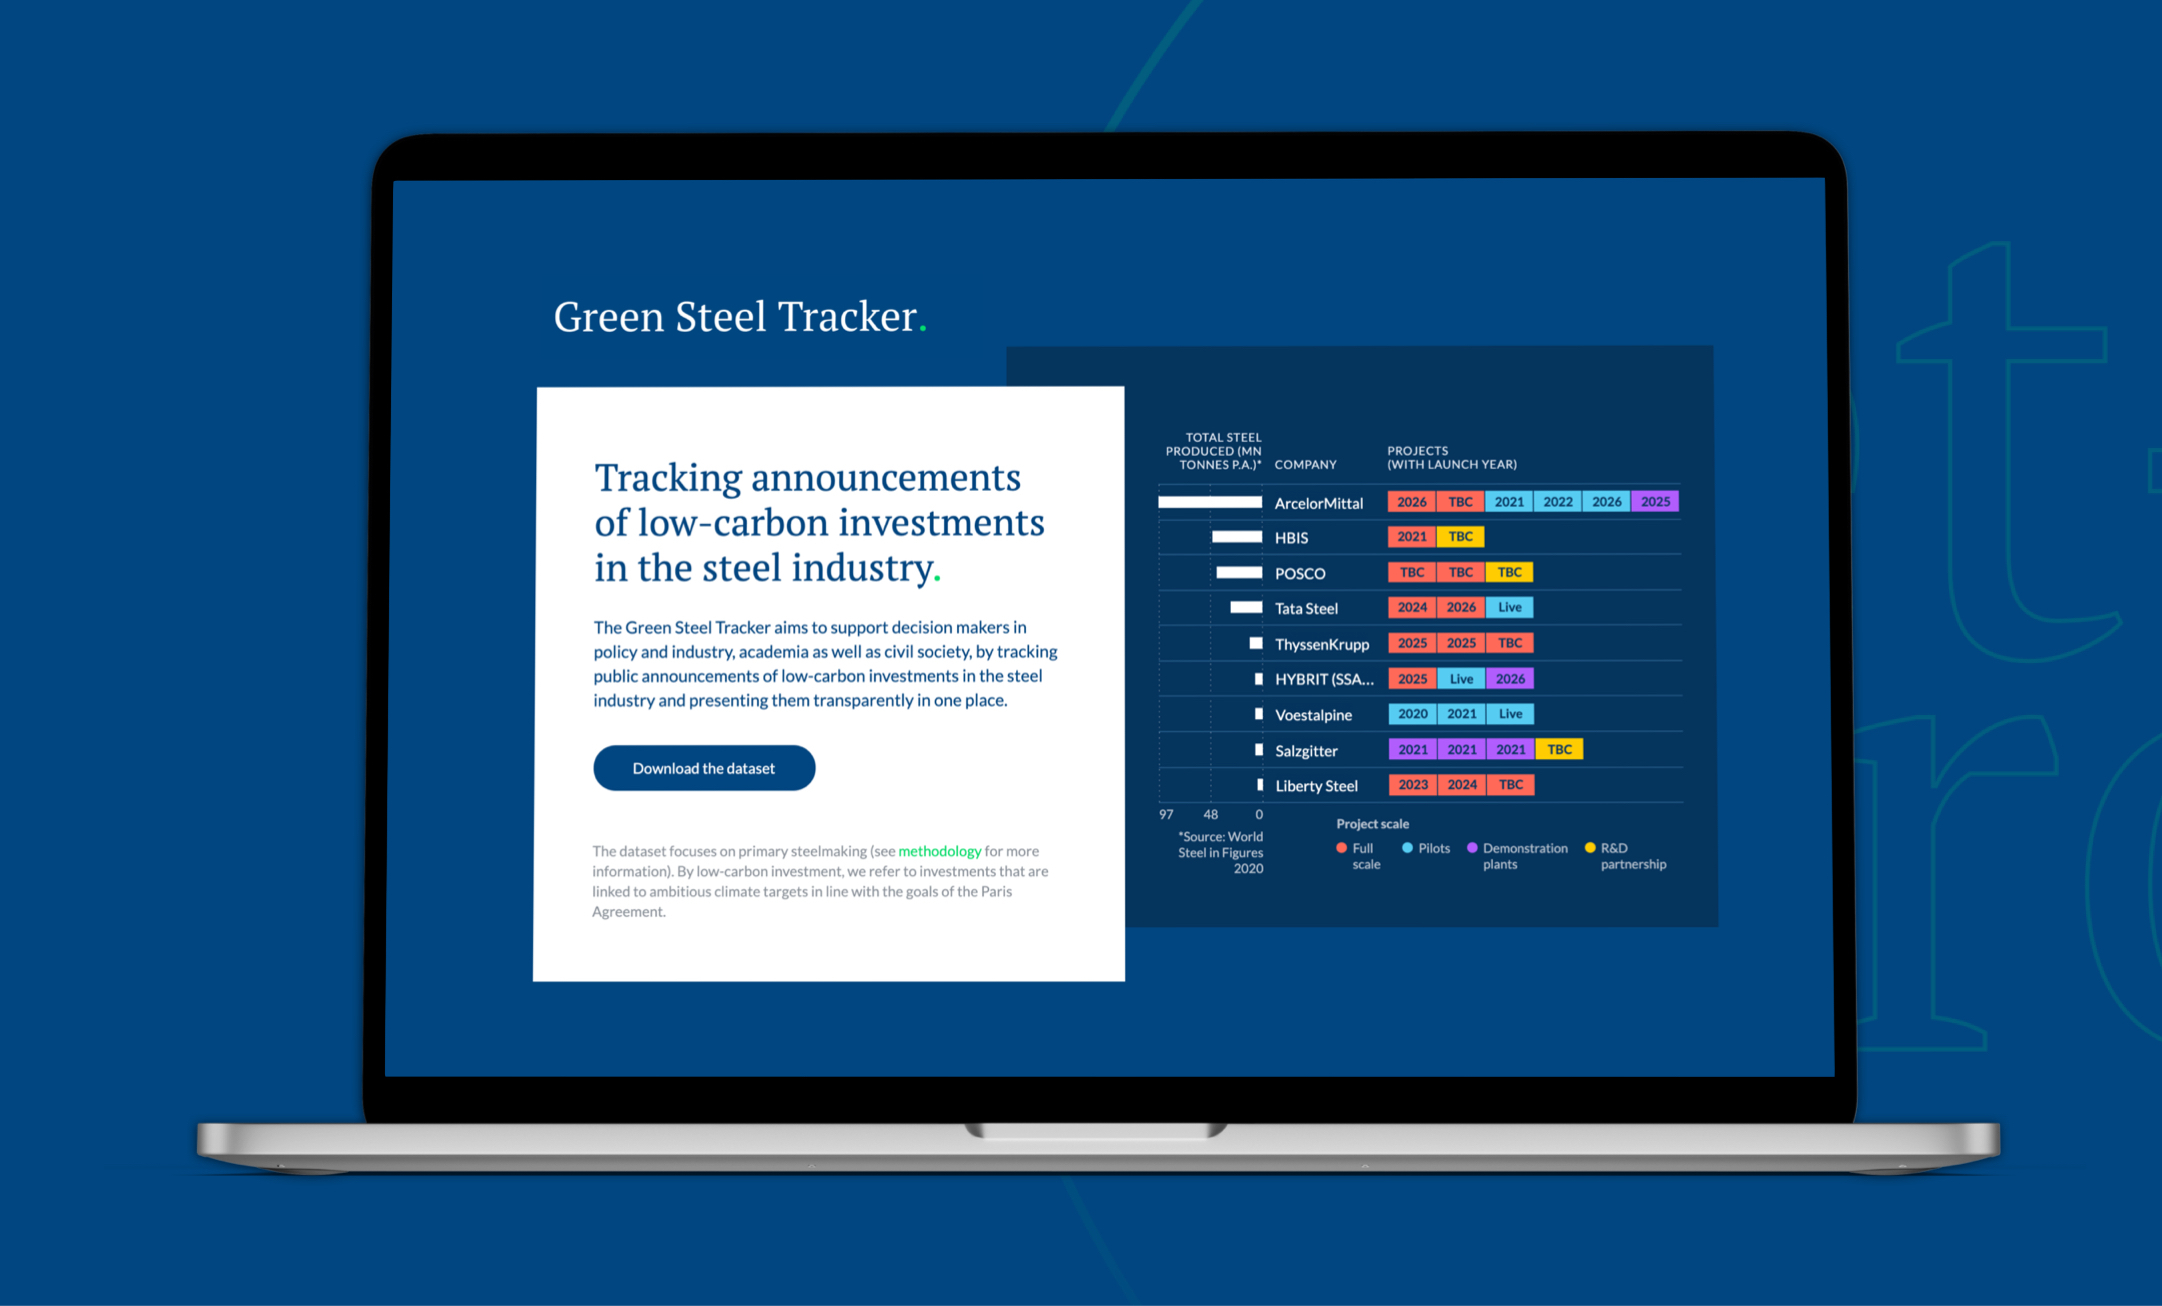 LeadIT – Green Steel Tracker